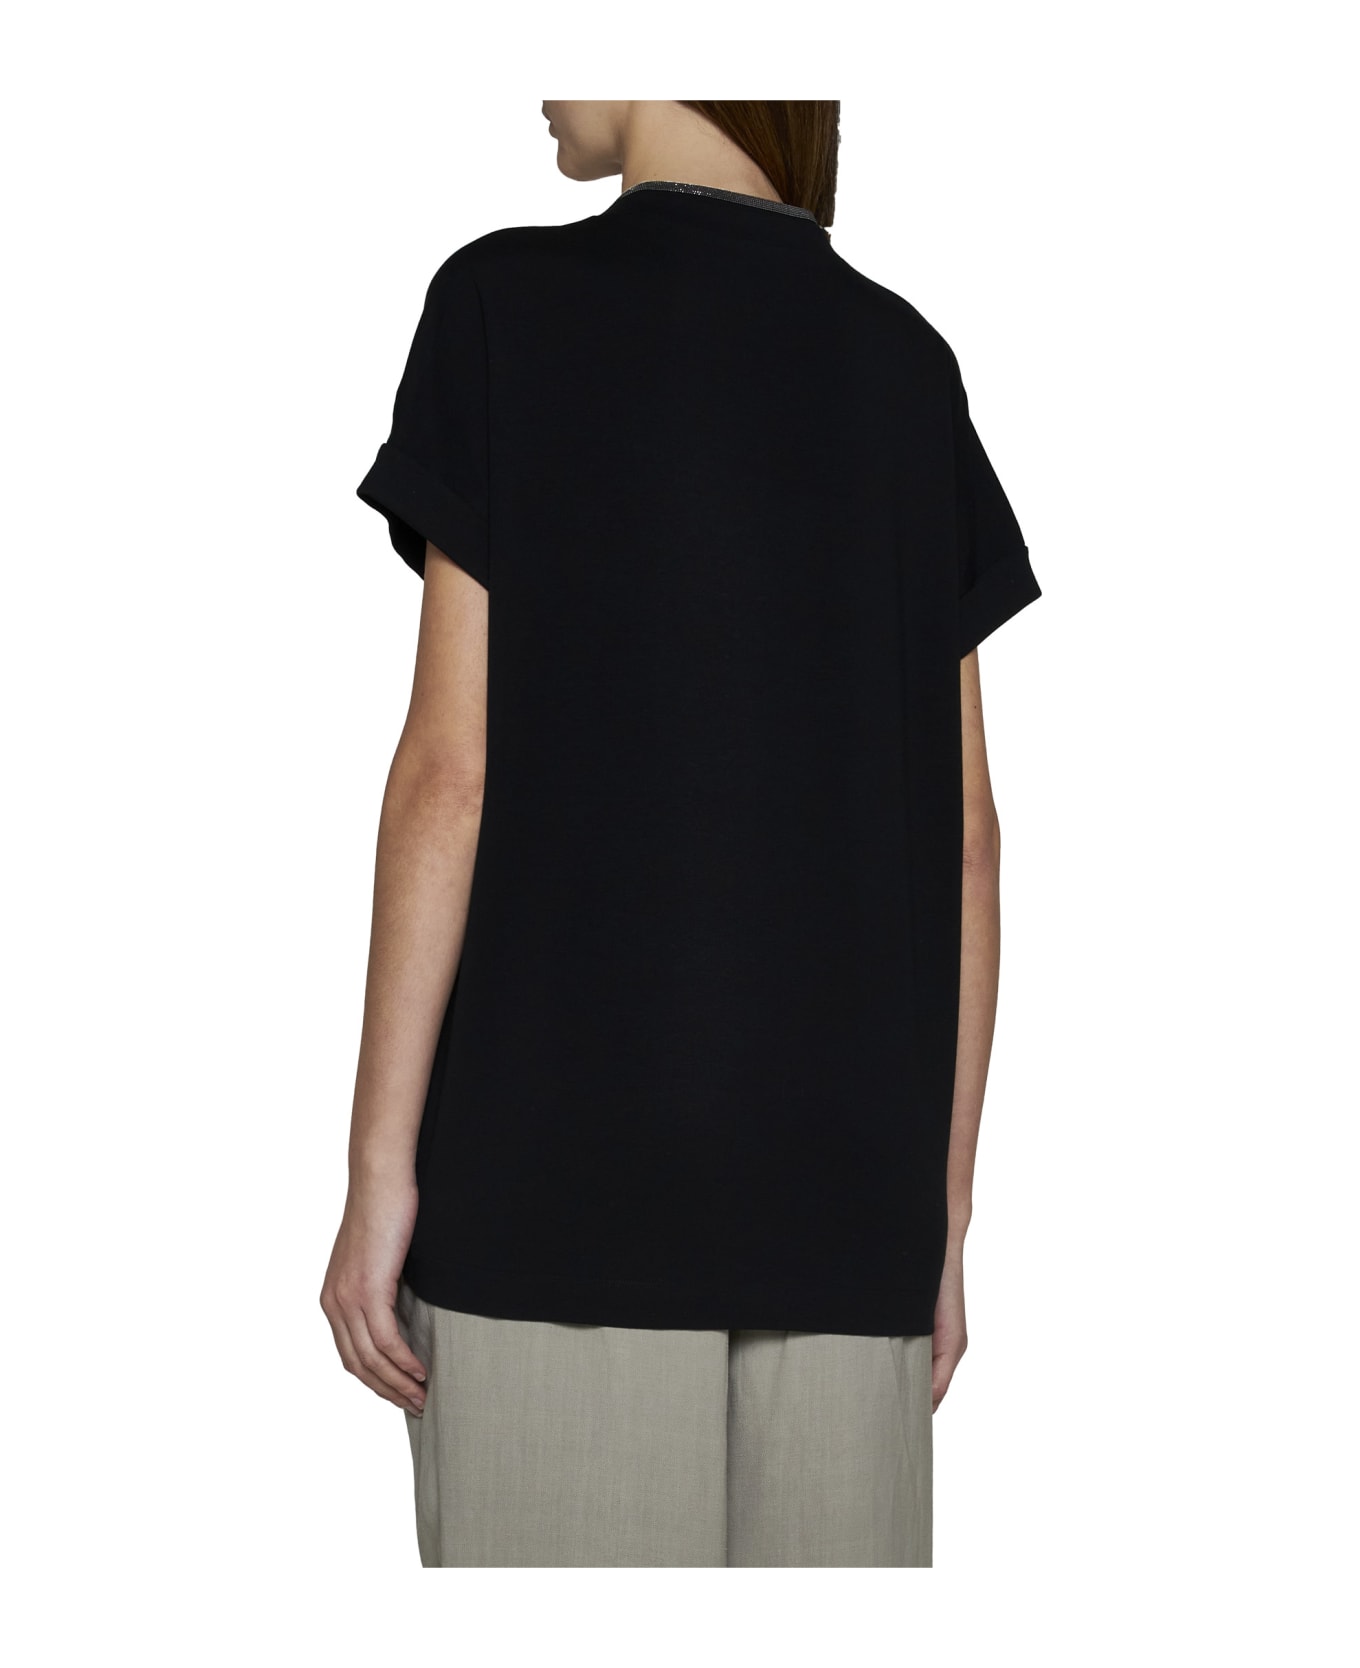 Brunello Cucinelli T-Shirt - Black